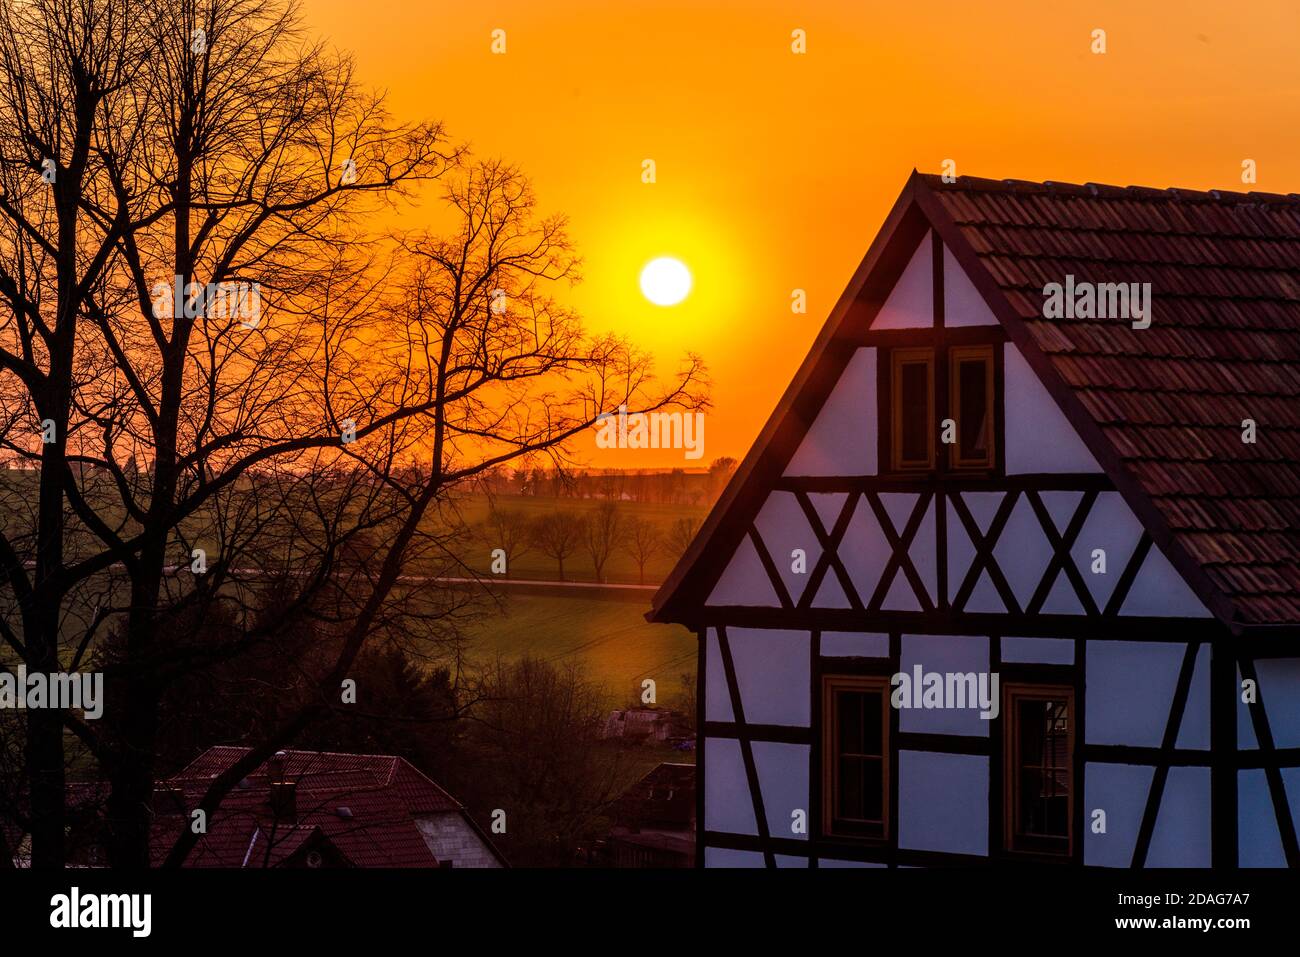 Fachwerkhaus, mittelsächsisches Dorf, Sonnenuntergang im Frühjahr/März Foto de stock